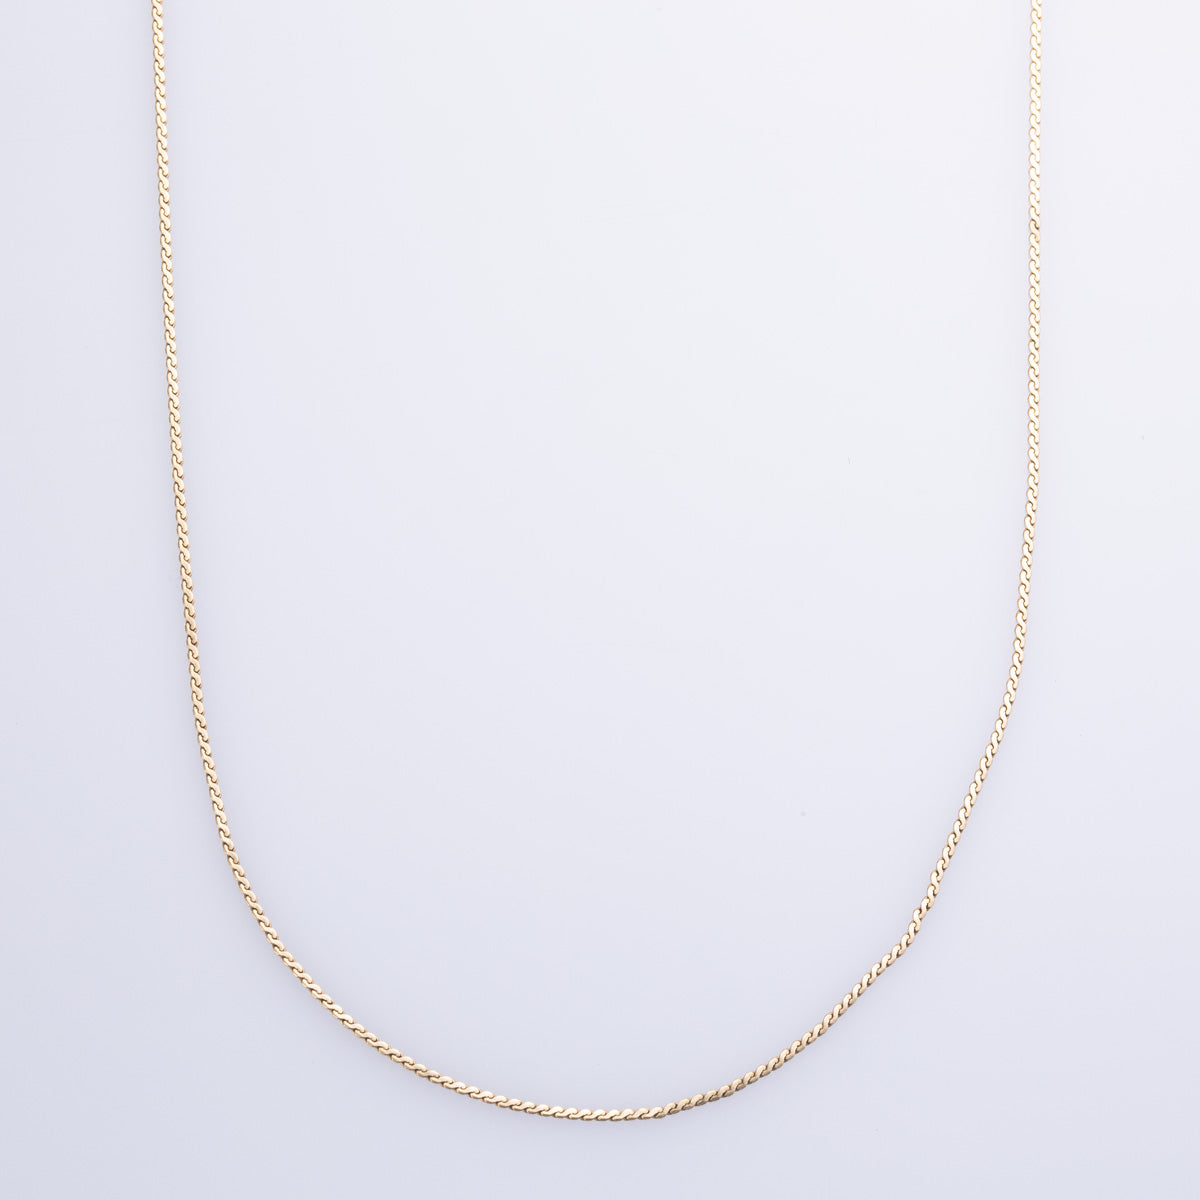 10k White Gold Serpentine Chain | 16